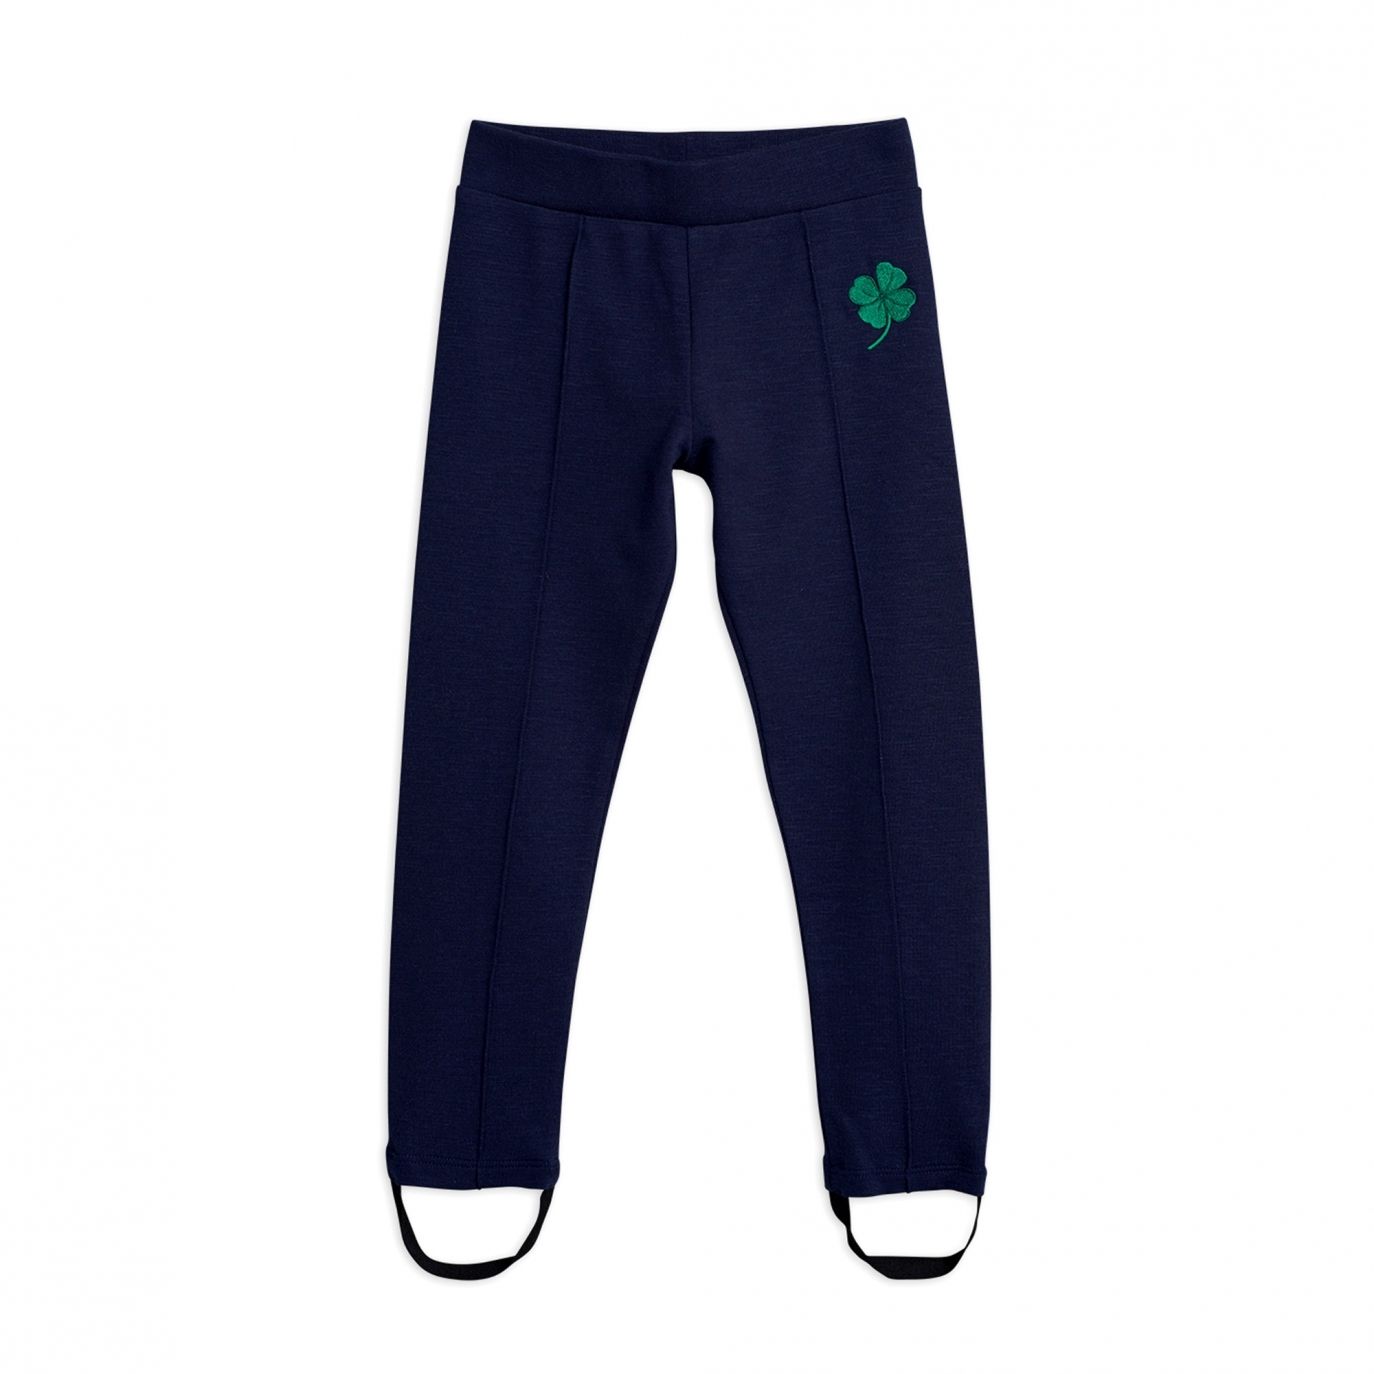 Mini Rodini - Clover emb skipants navy - Pants & leggings - 2023014467 